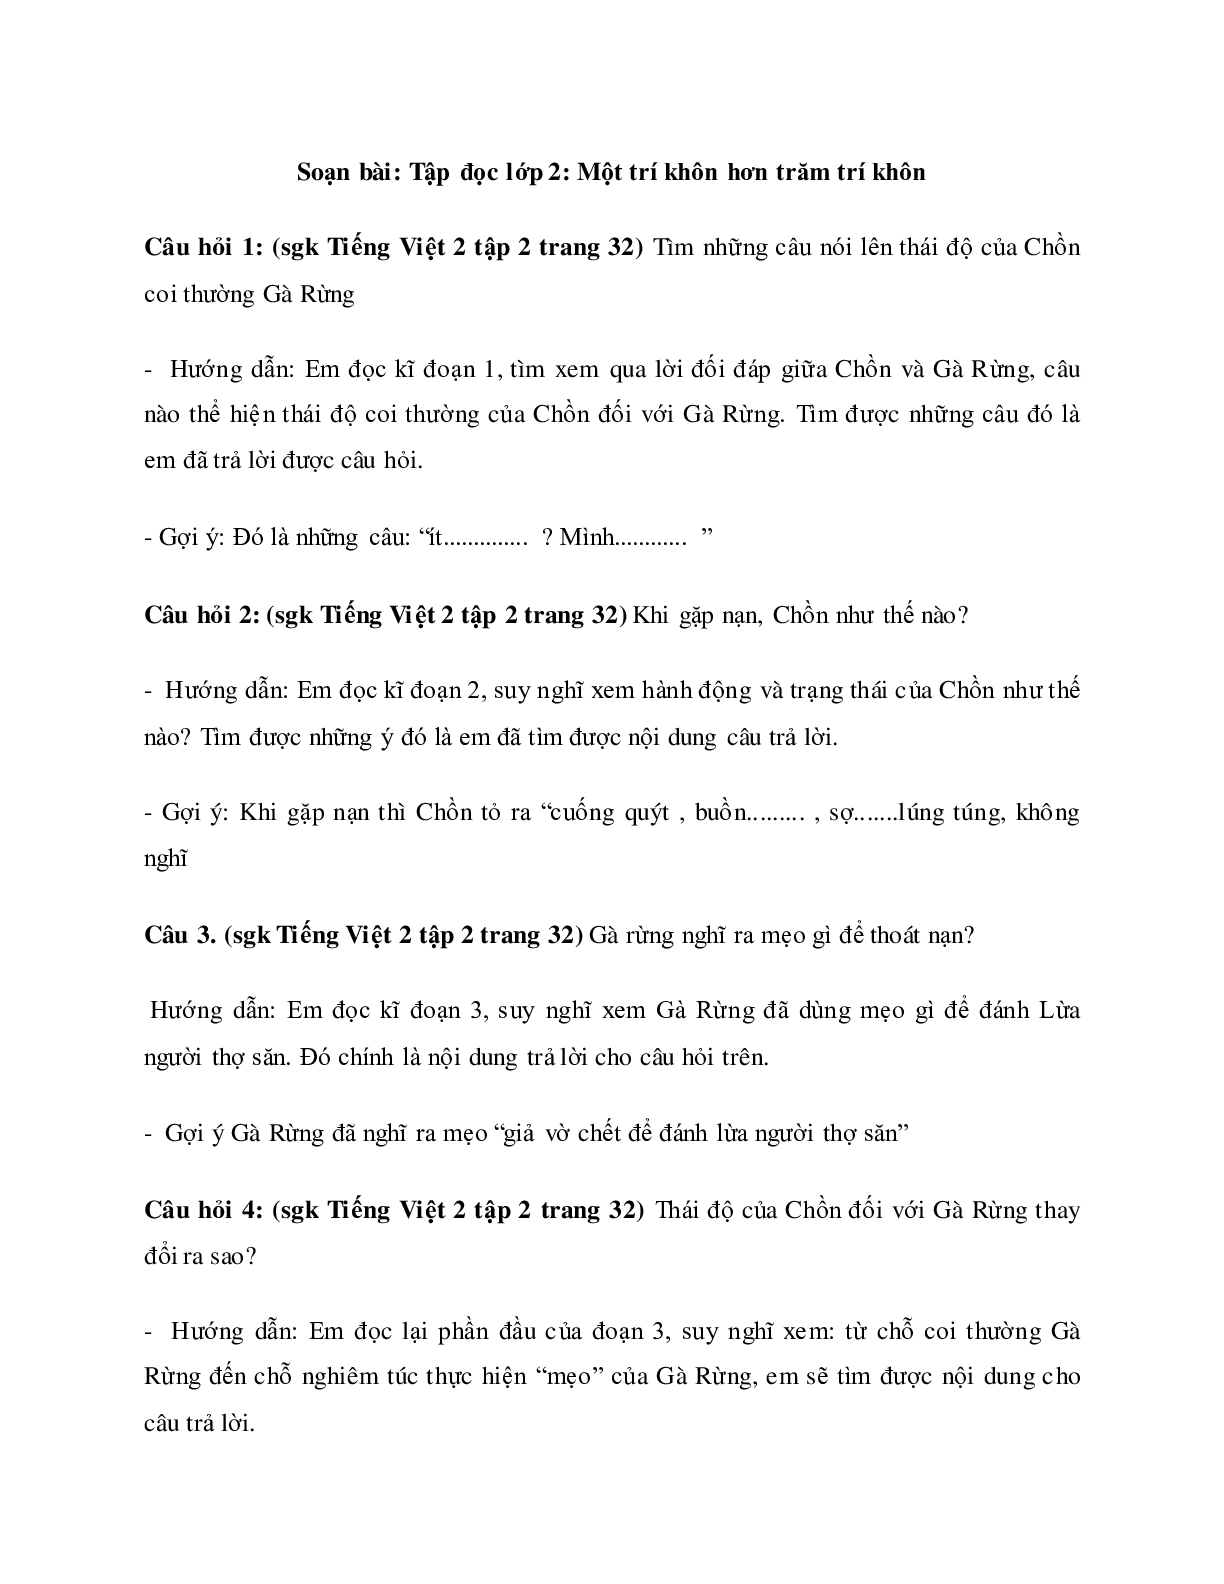 Soạn Tiếng Việt lớp 2: Tập đọc: Một trí khôn hơn trăm trí khôn mới nhất (trang 1)